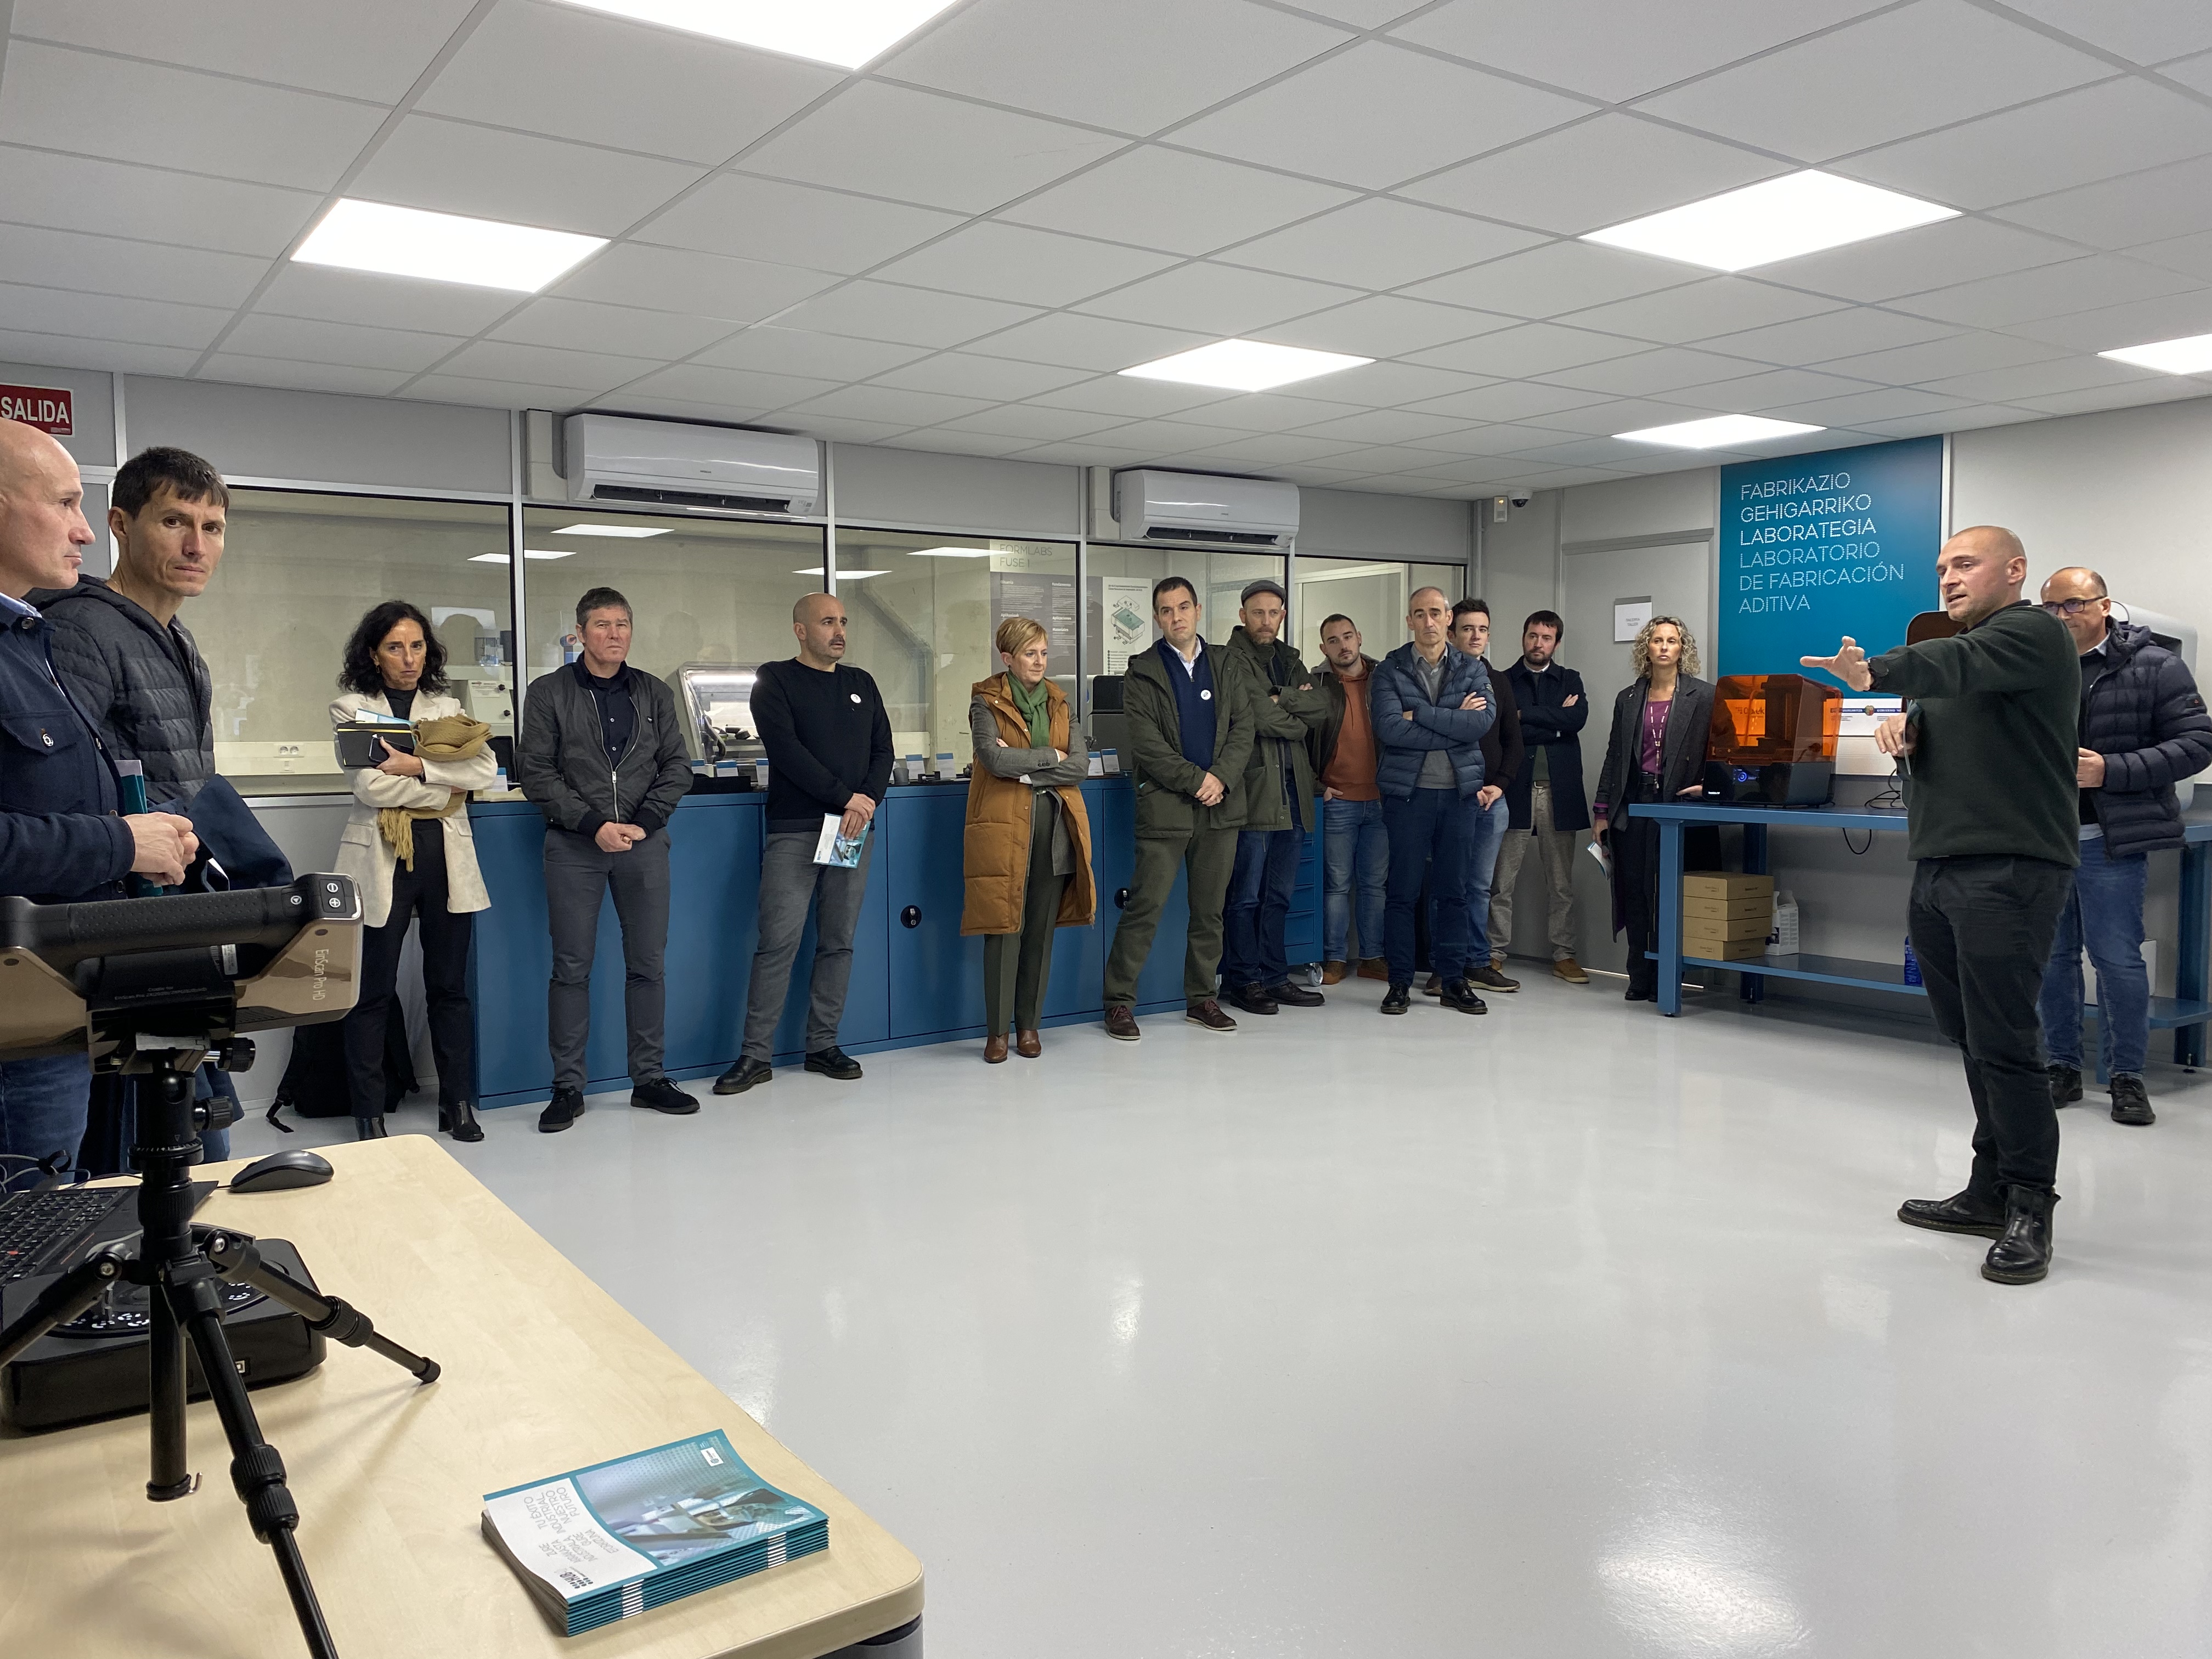 Goierri Valley inaugura el HUB 4.0, un laboratorio centrado en fomentar la transformación digital y acercar las tecnologías 4.0 a las pymes